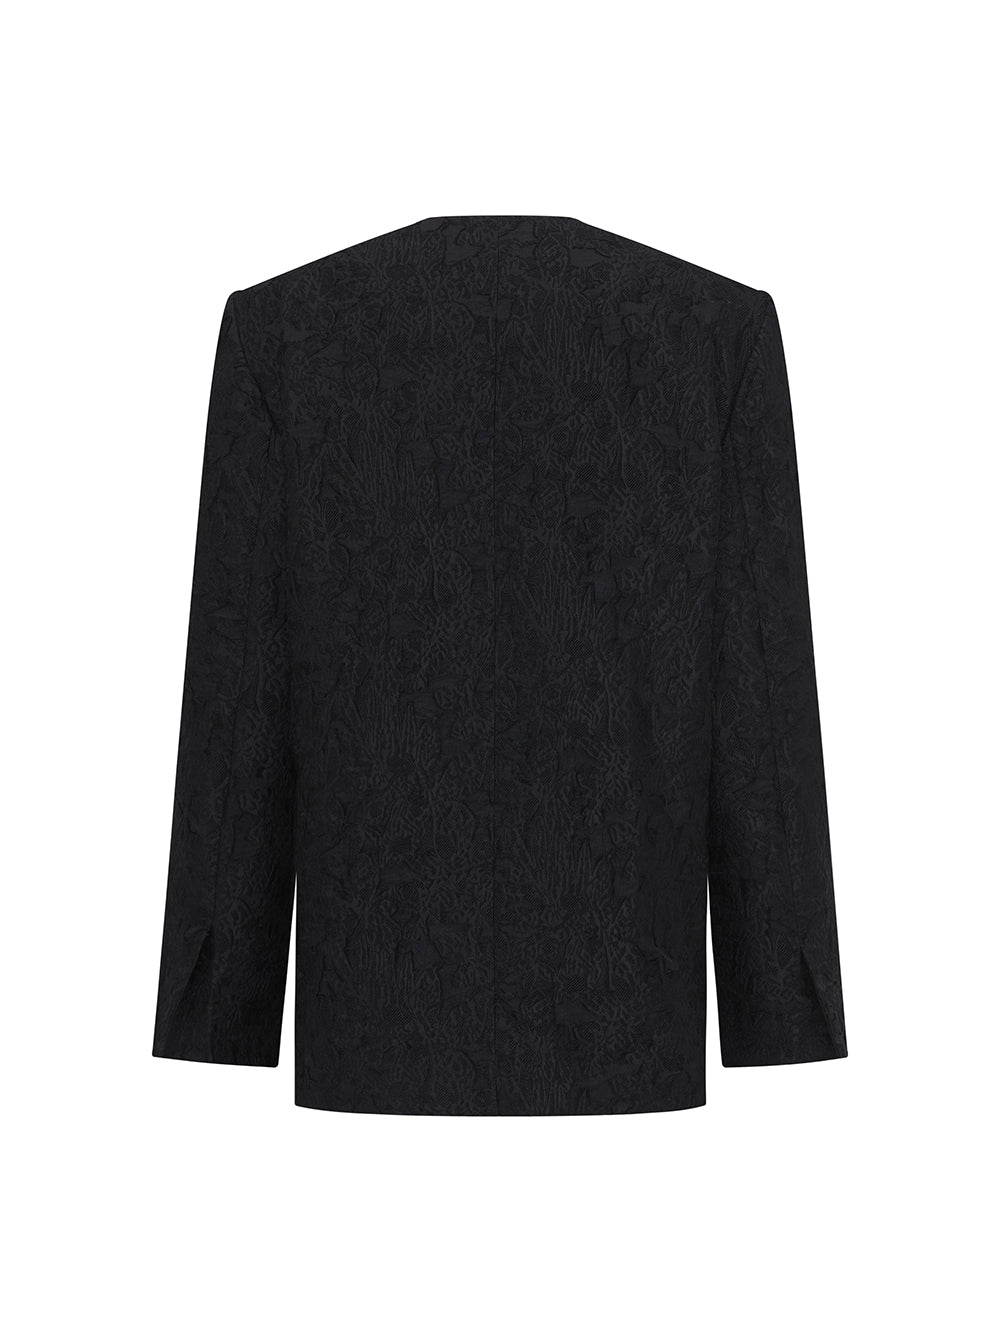 MUKZIN Black Stylish Jacquard DurableVersatile Suit